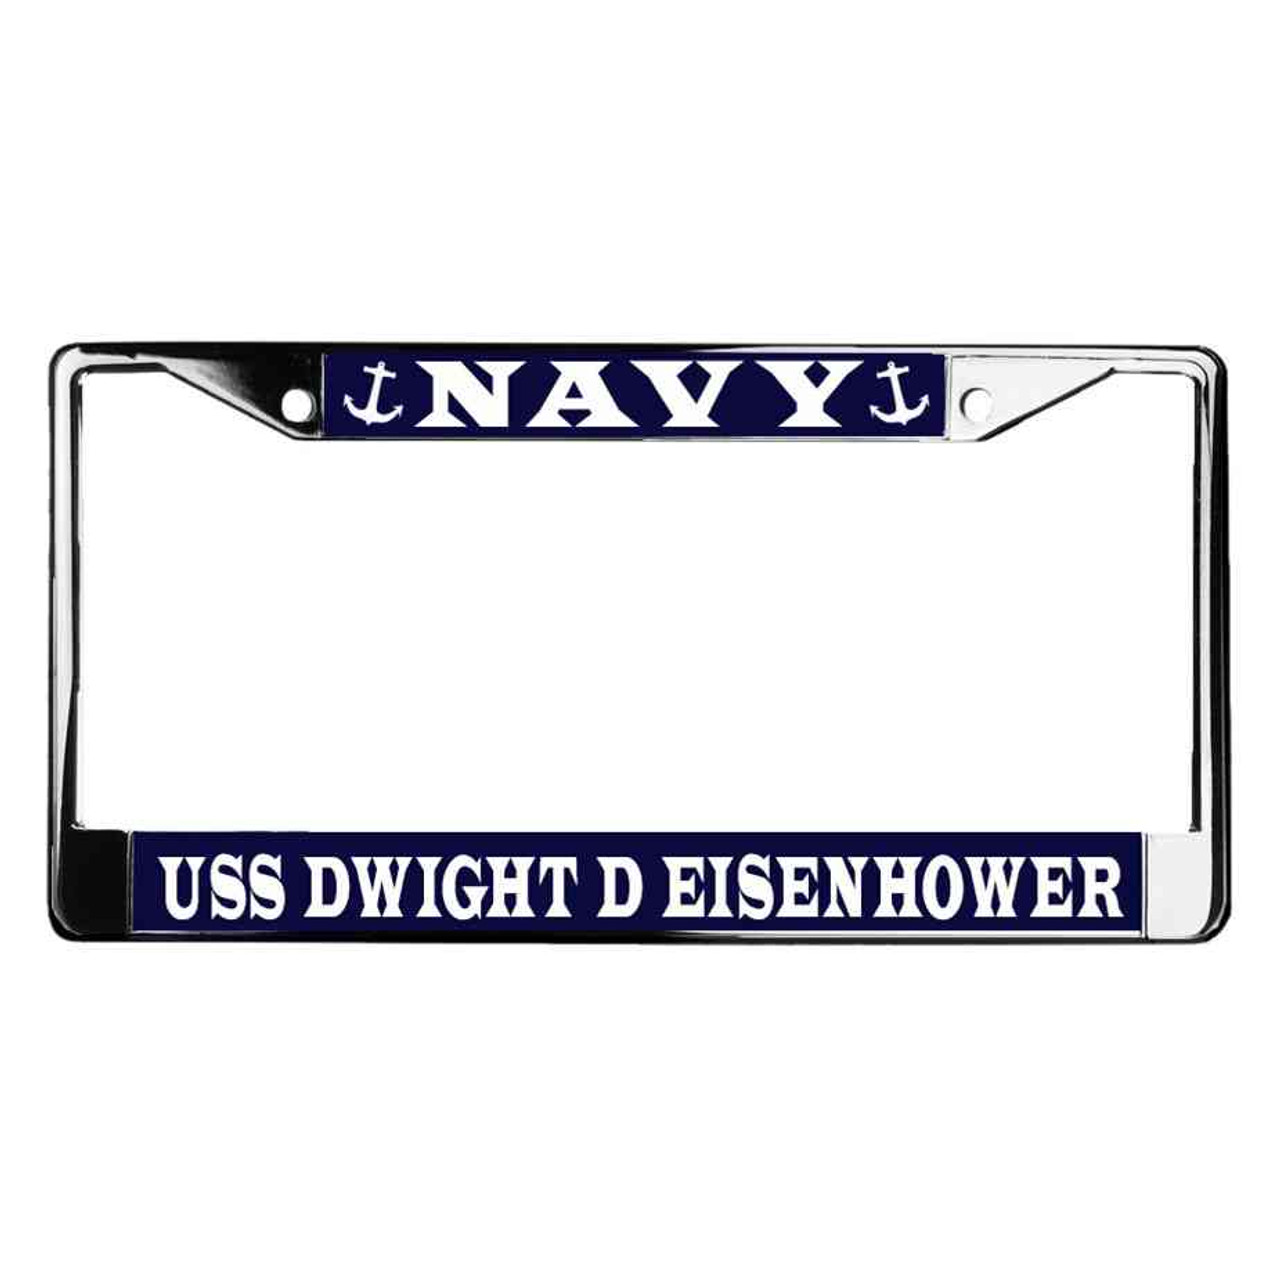 uss dwight d eisenhower license plate frame